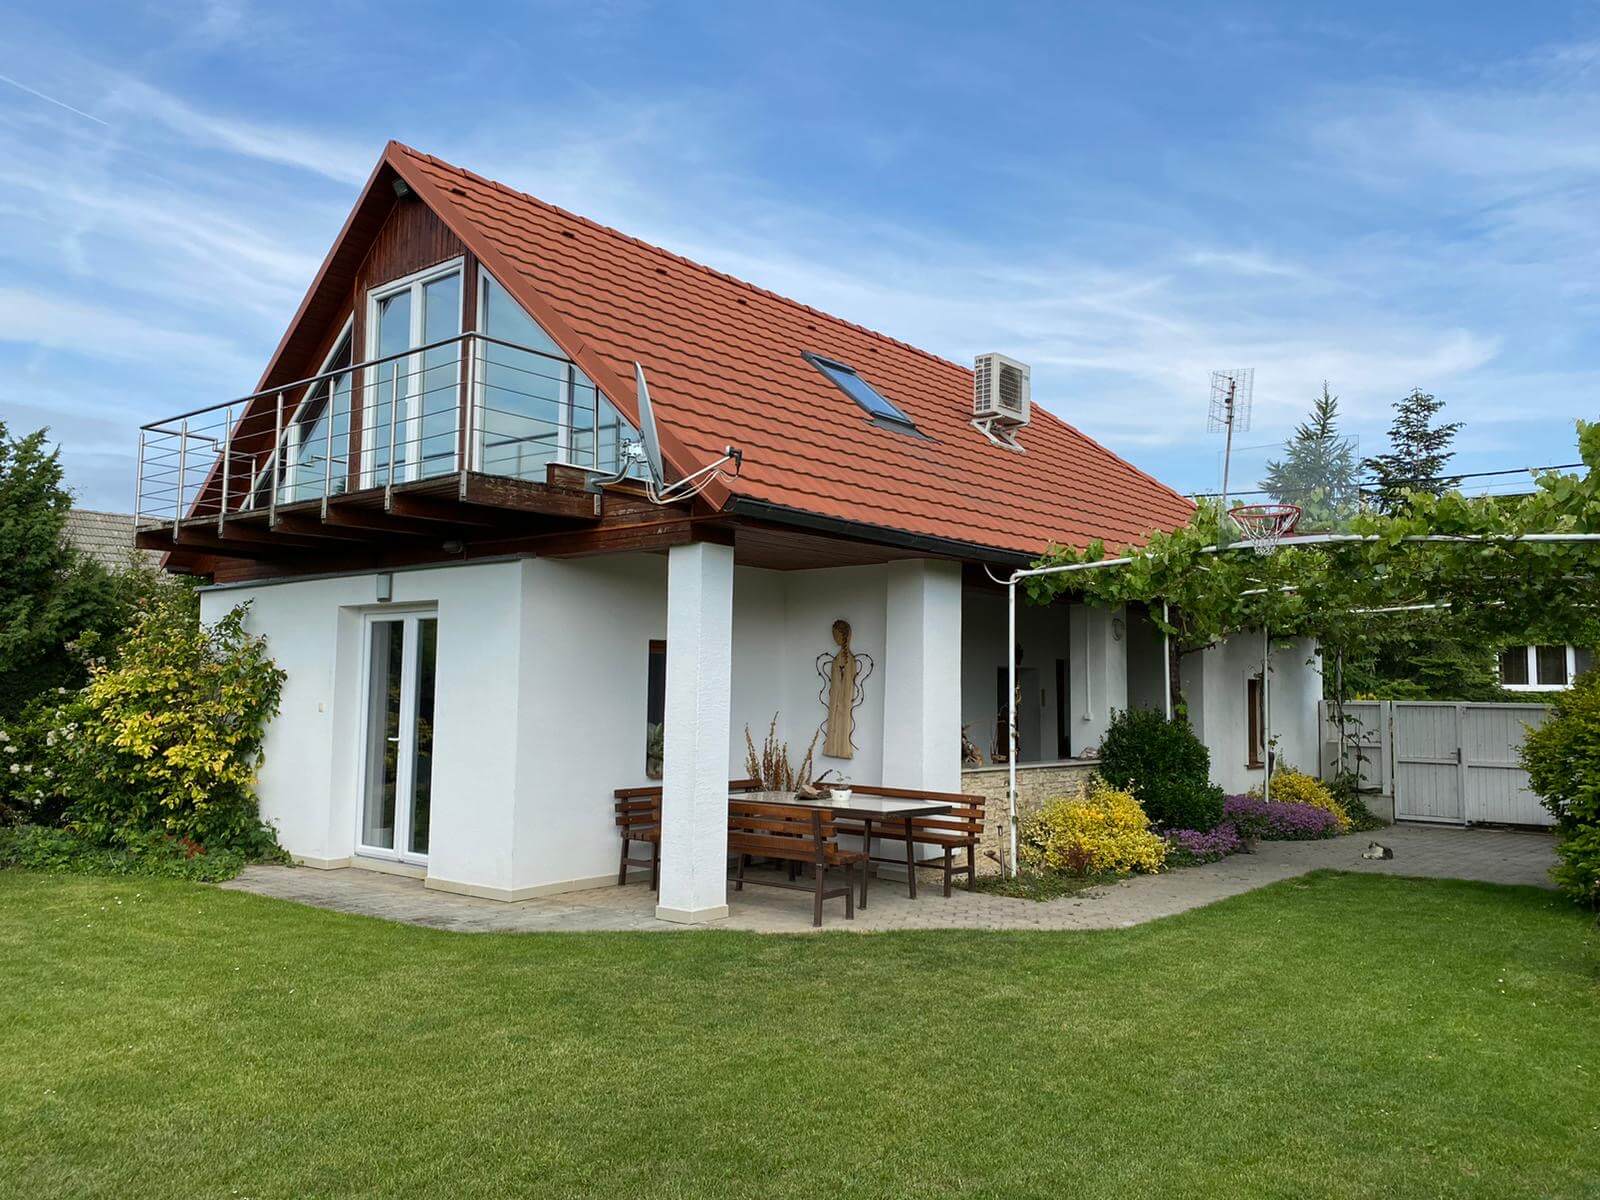 Predané: Predaj Rodinný dom v Šoporni, v tichej lokalite, pozemok 674m2, úžitková plocha 181m2,záhrada, kôlňa-0